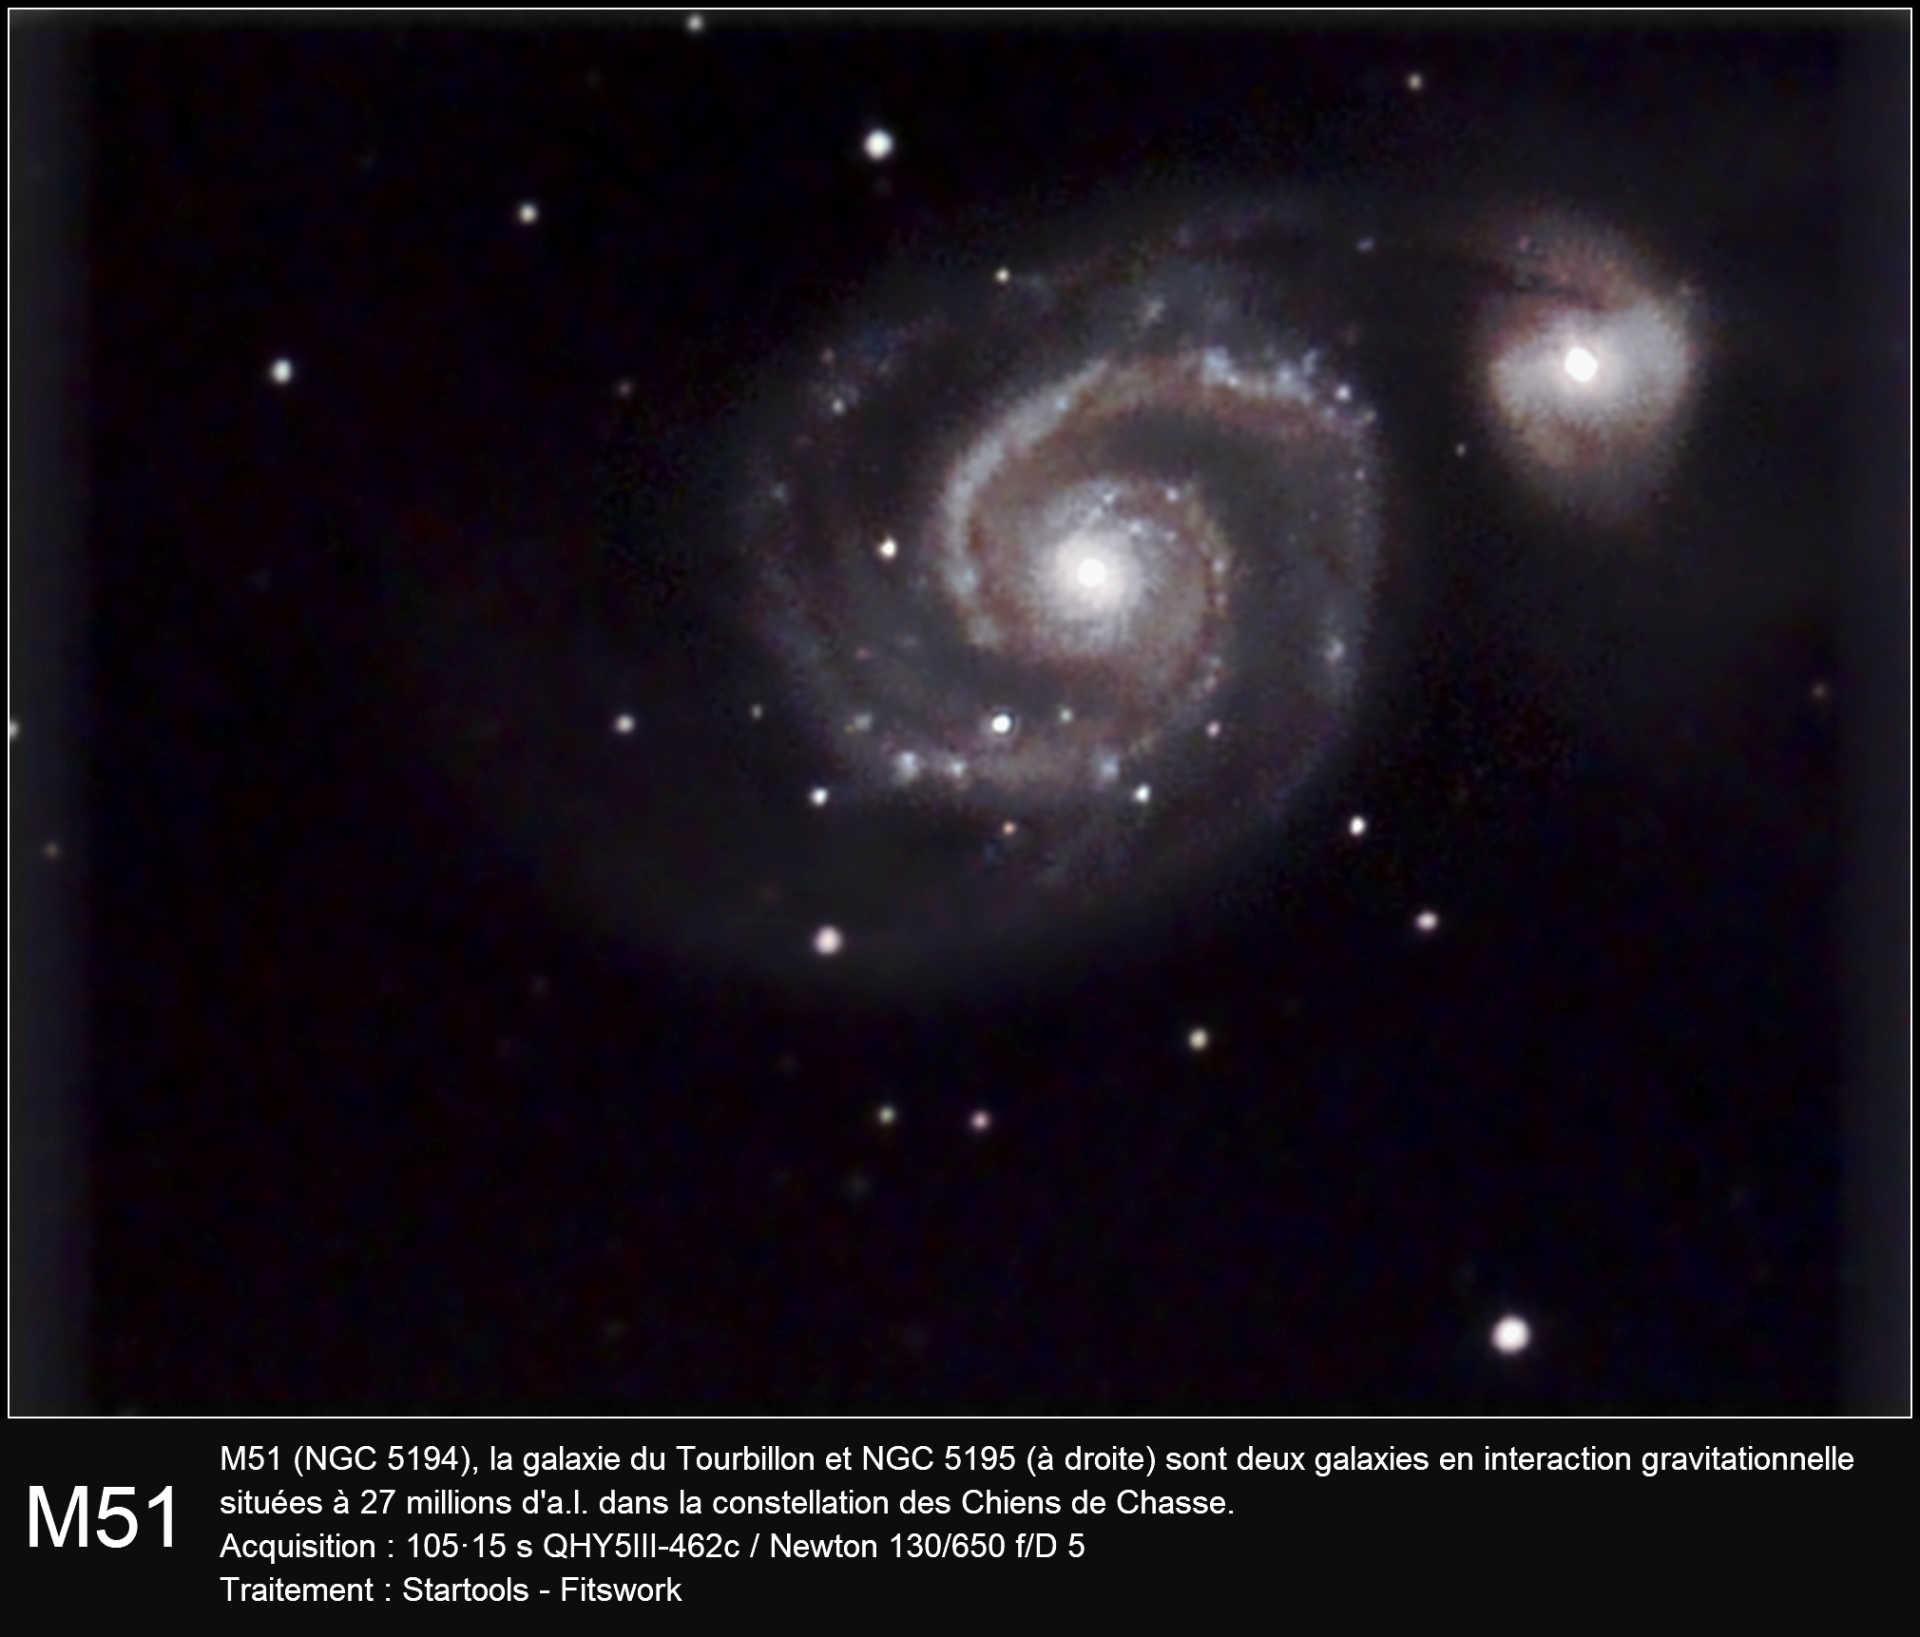 M51 (QHY462)